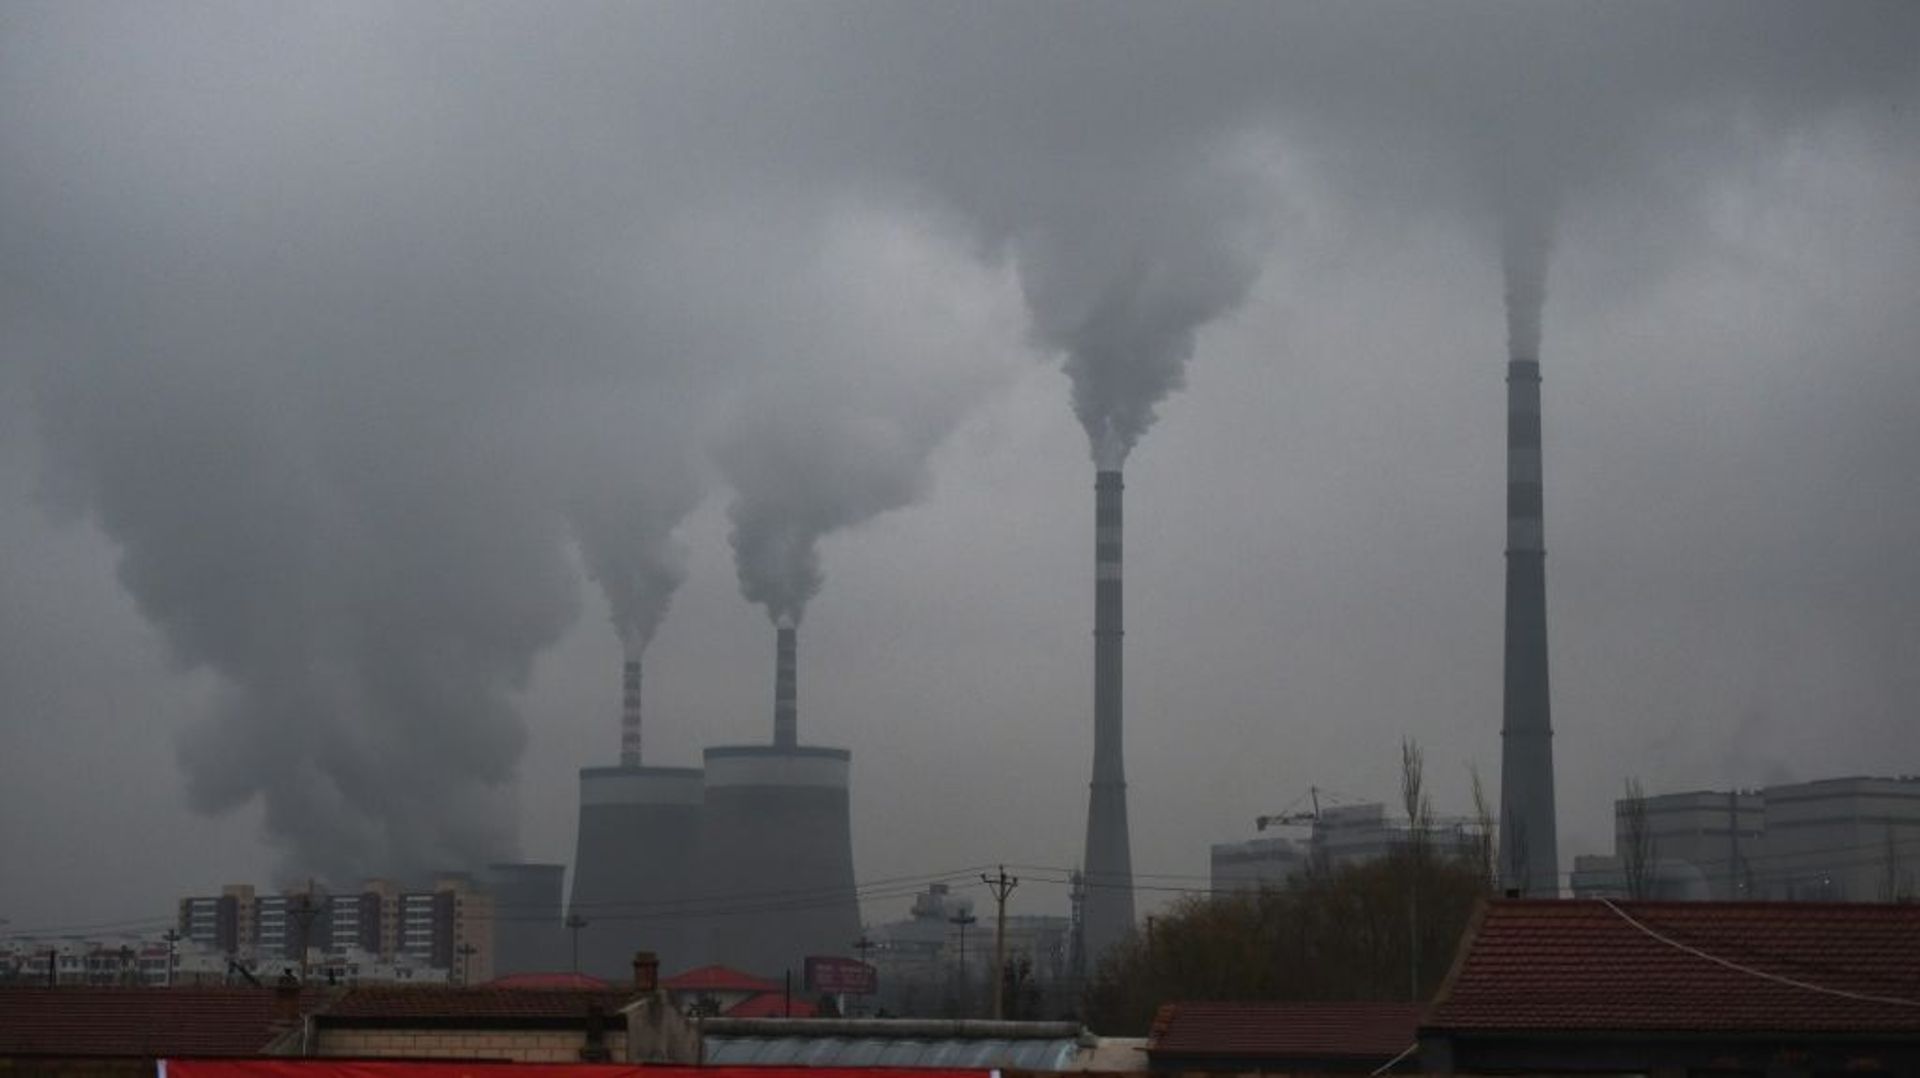 Une centrale à charbon près de Datong, dans la province chinoise du Shanxi le 19 novembre 2015 